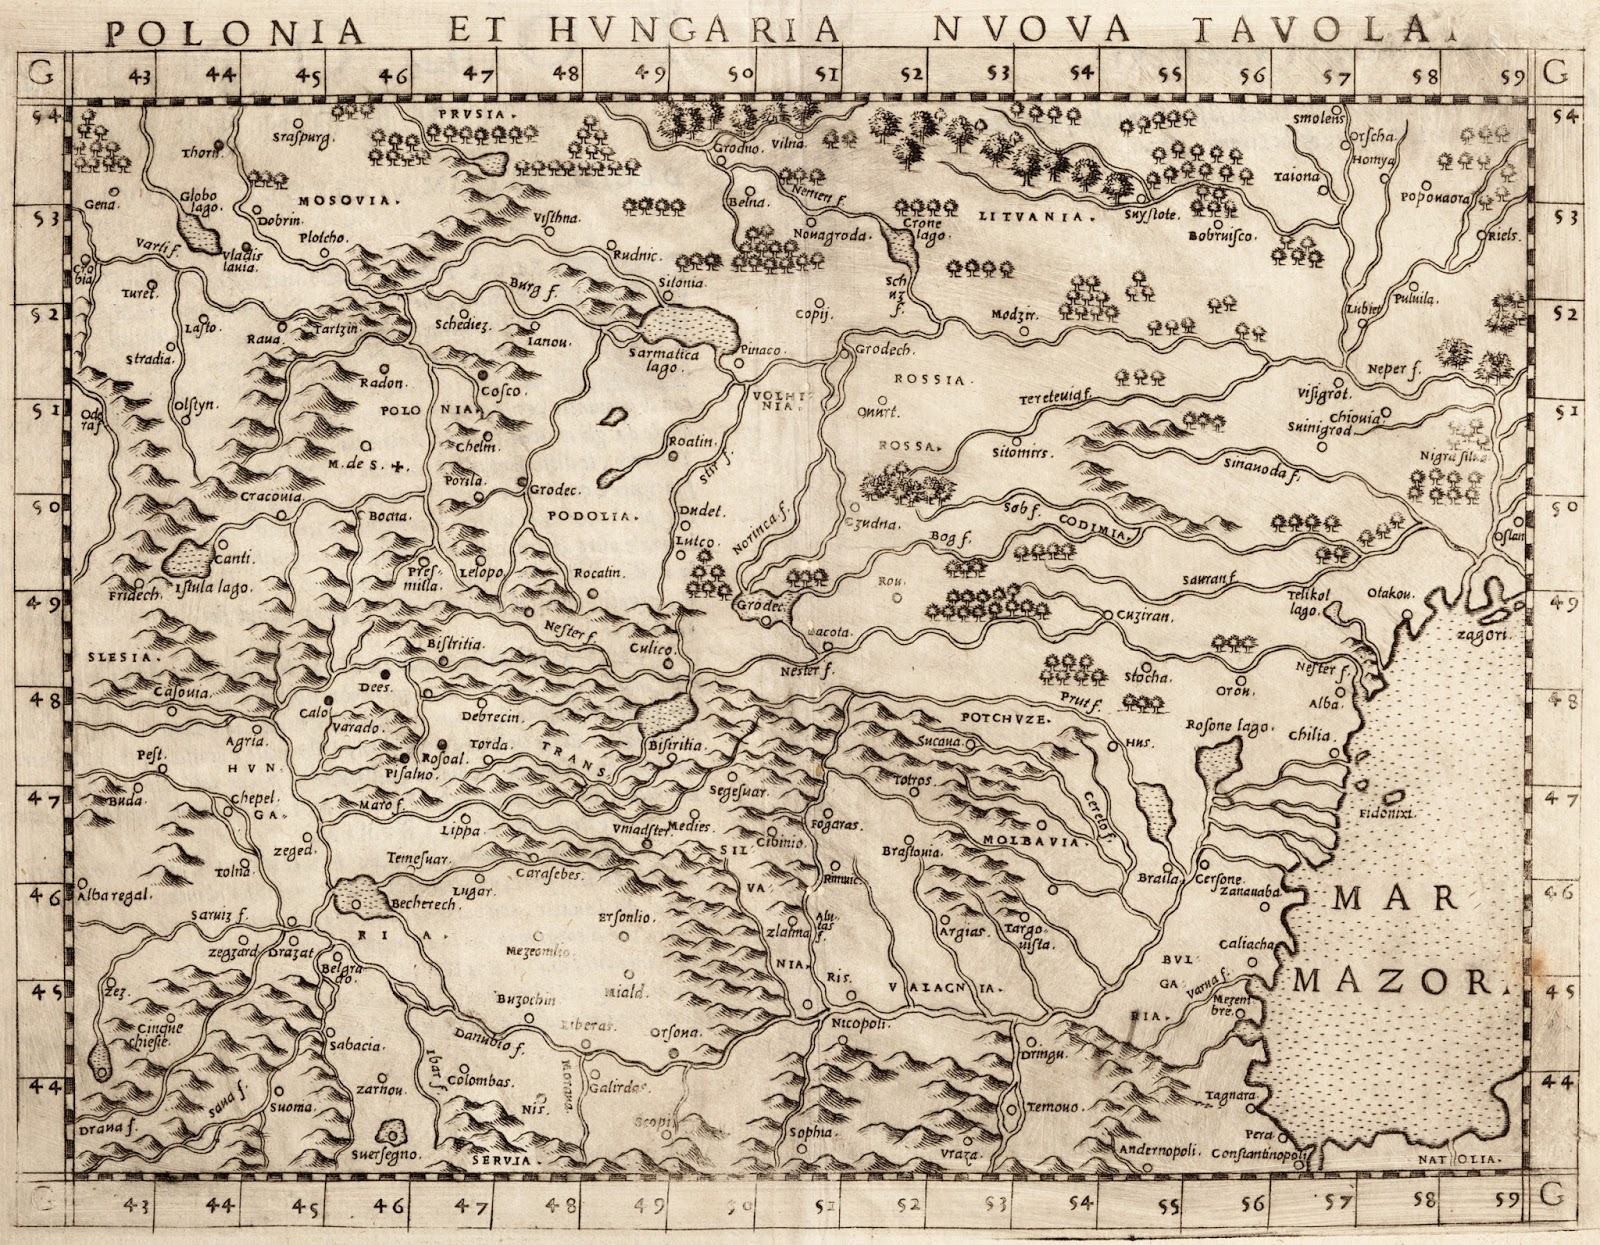 1560 rushelli-girolamo